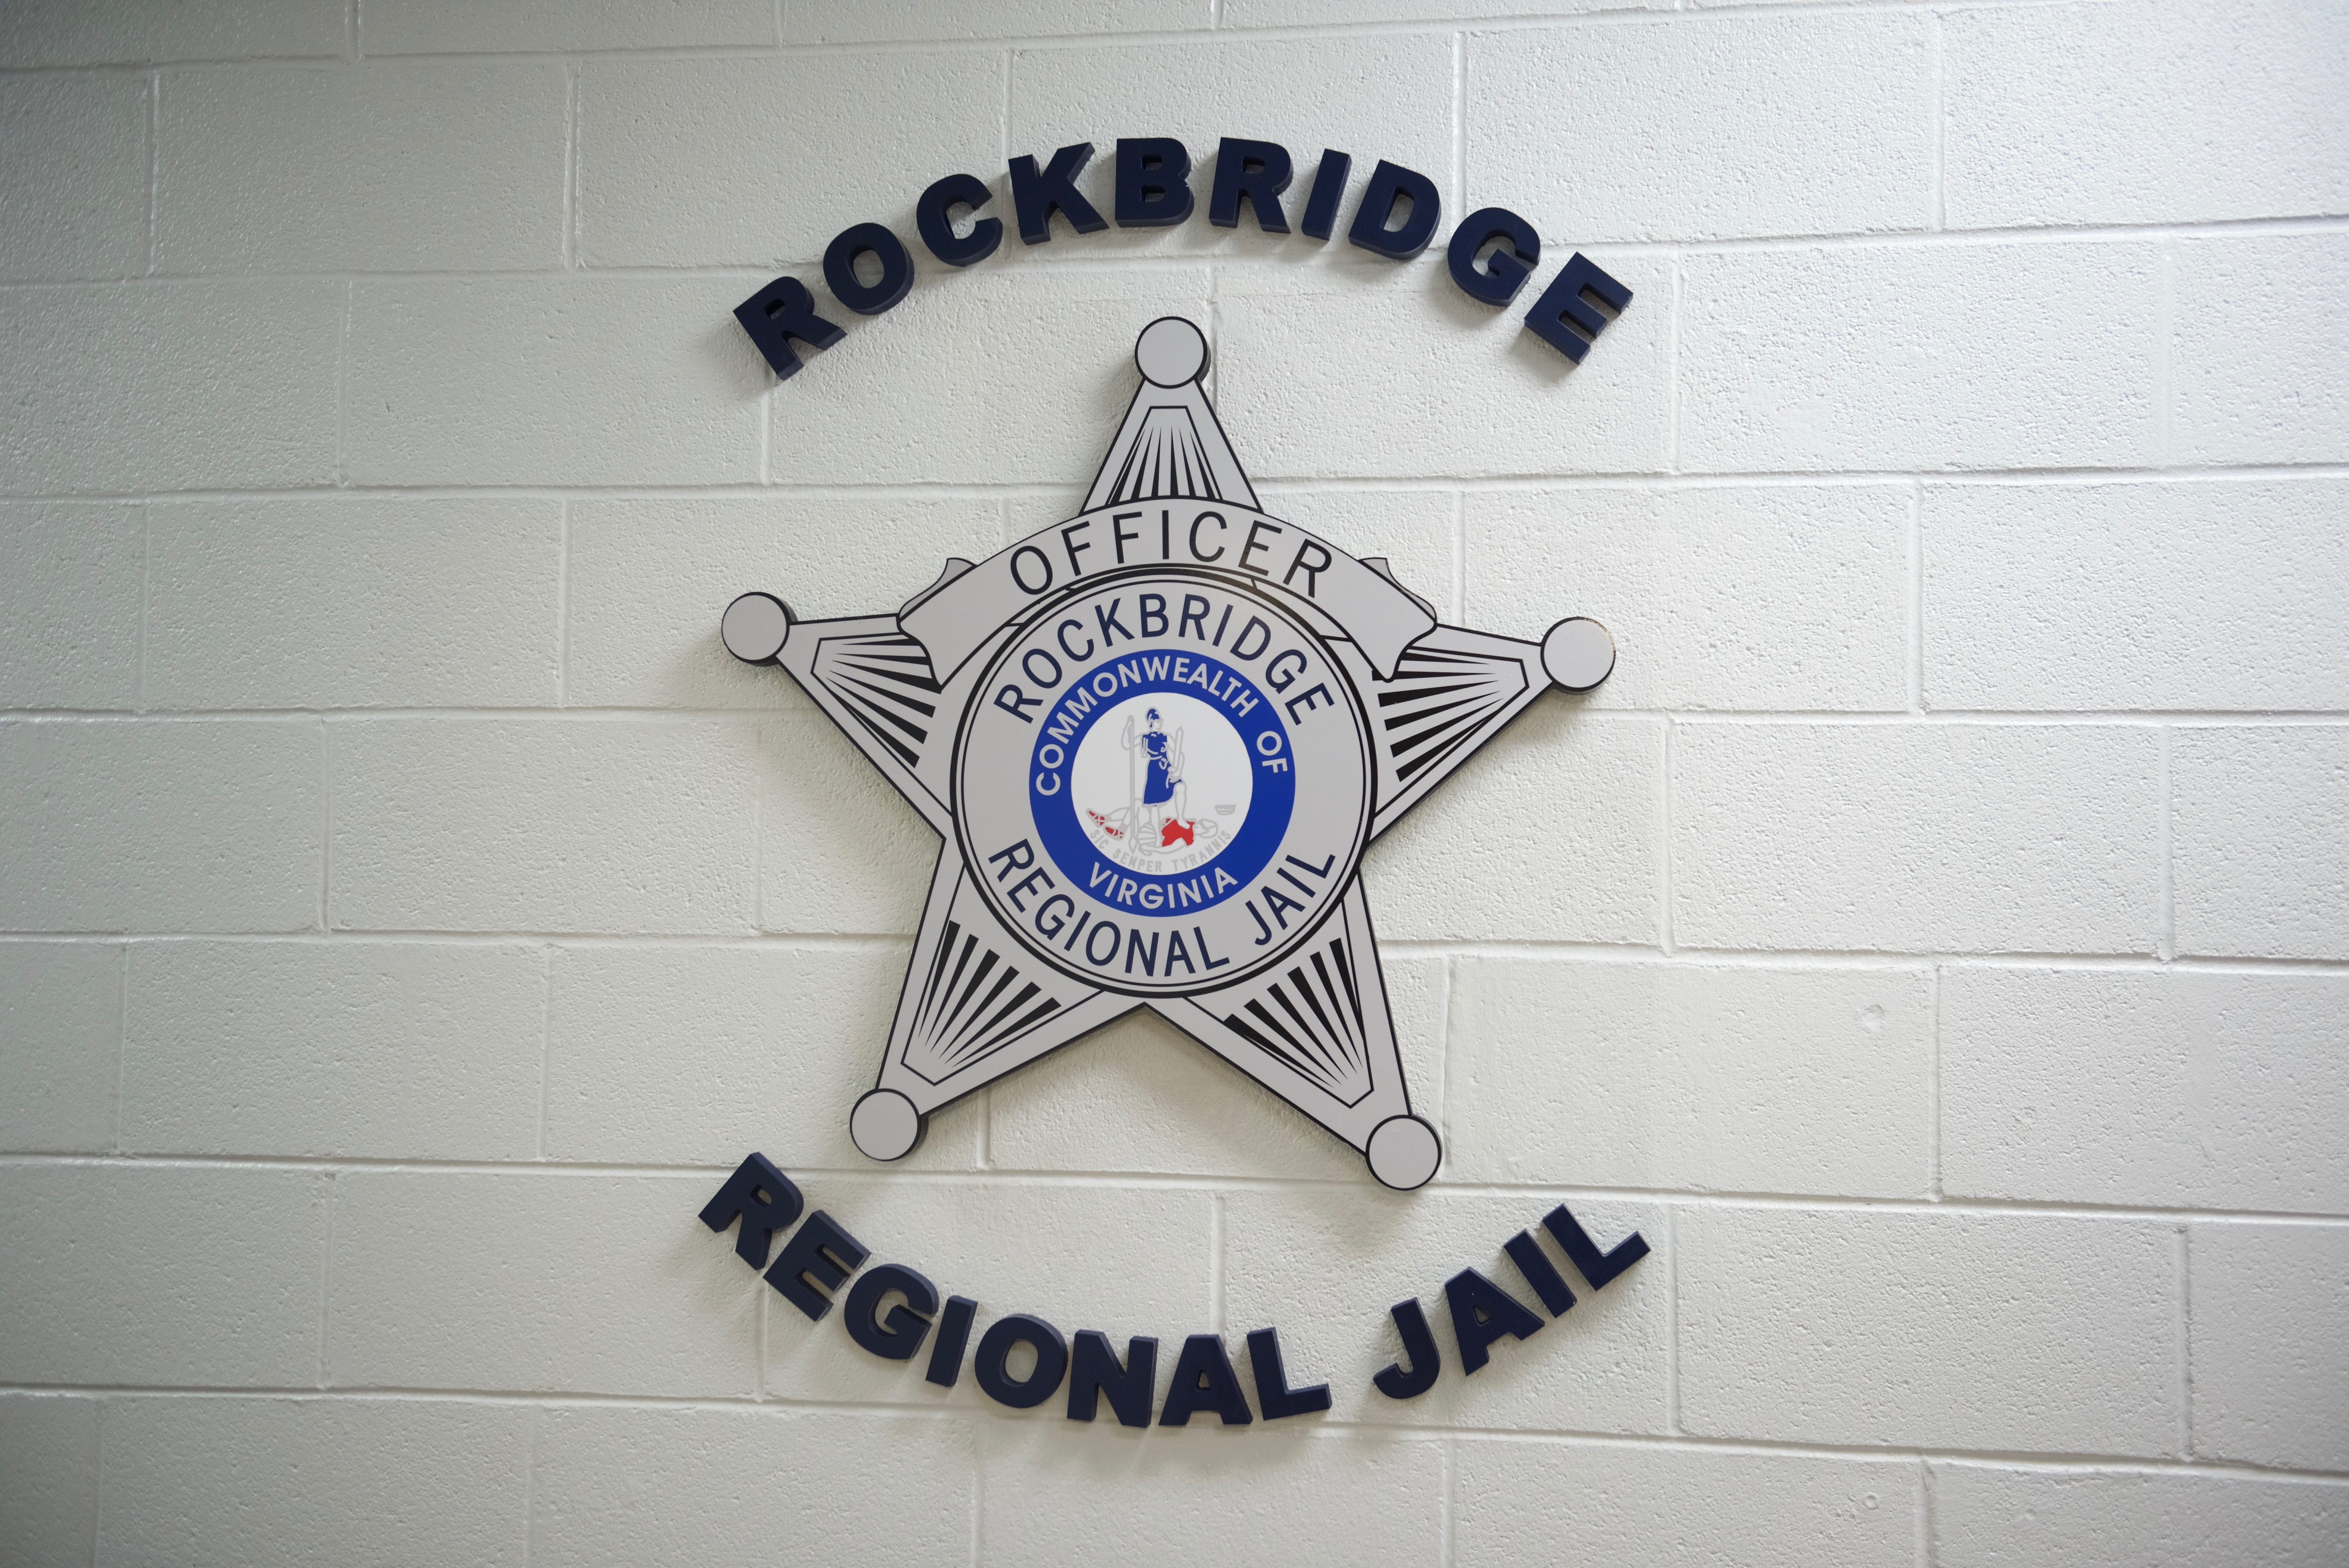 Rockbridge Regional Jail